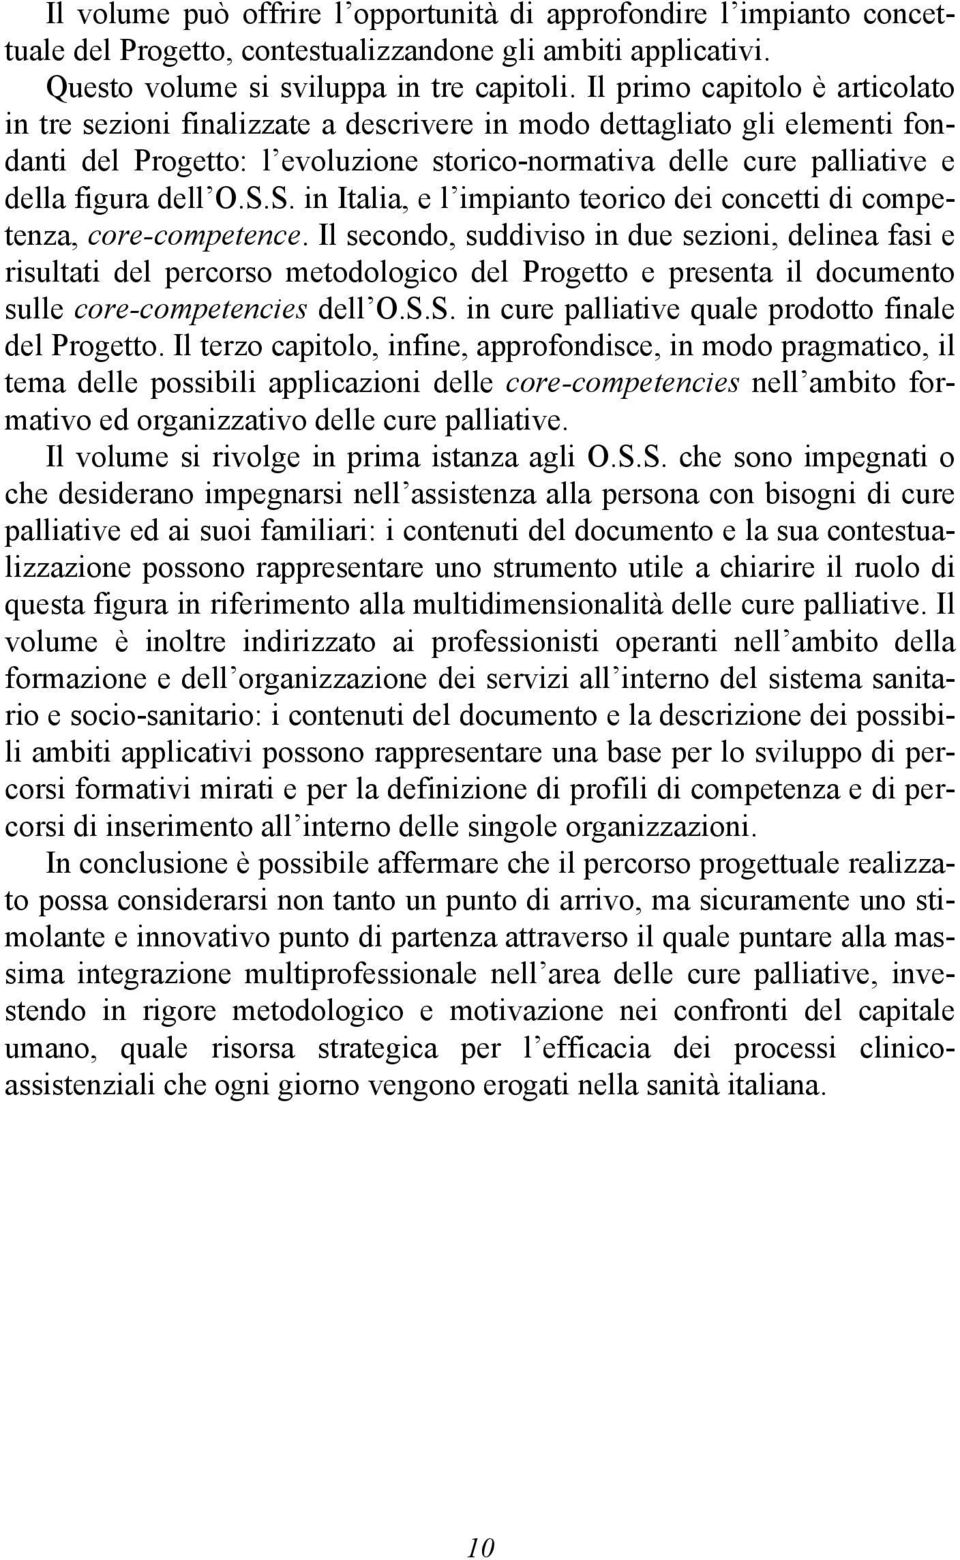 O.S.S. in Italia, e l impianto teorico dei concetti di competenza, core-competence.